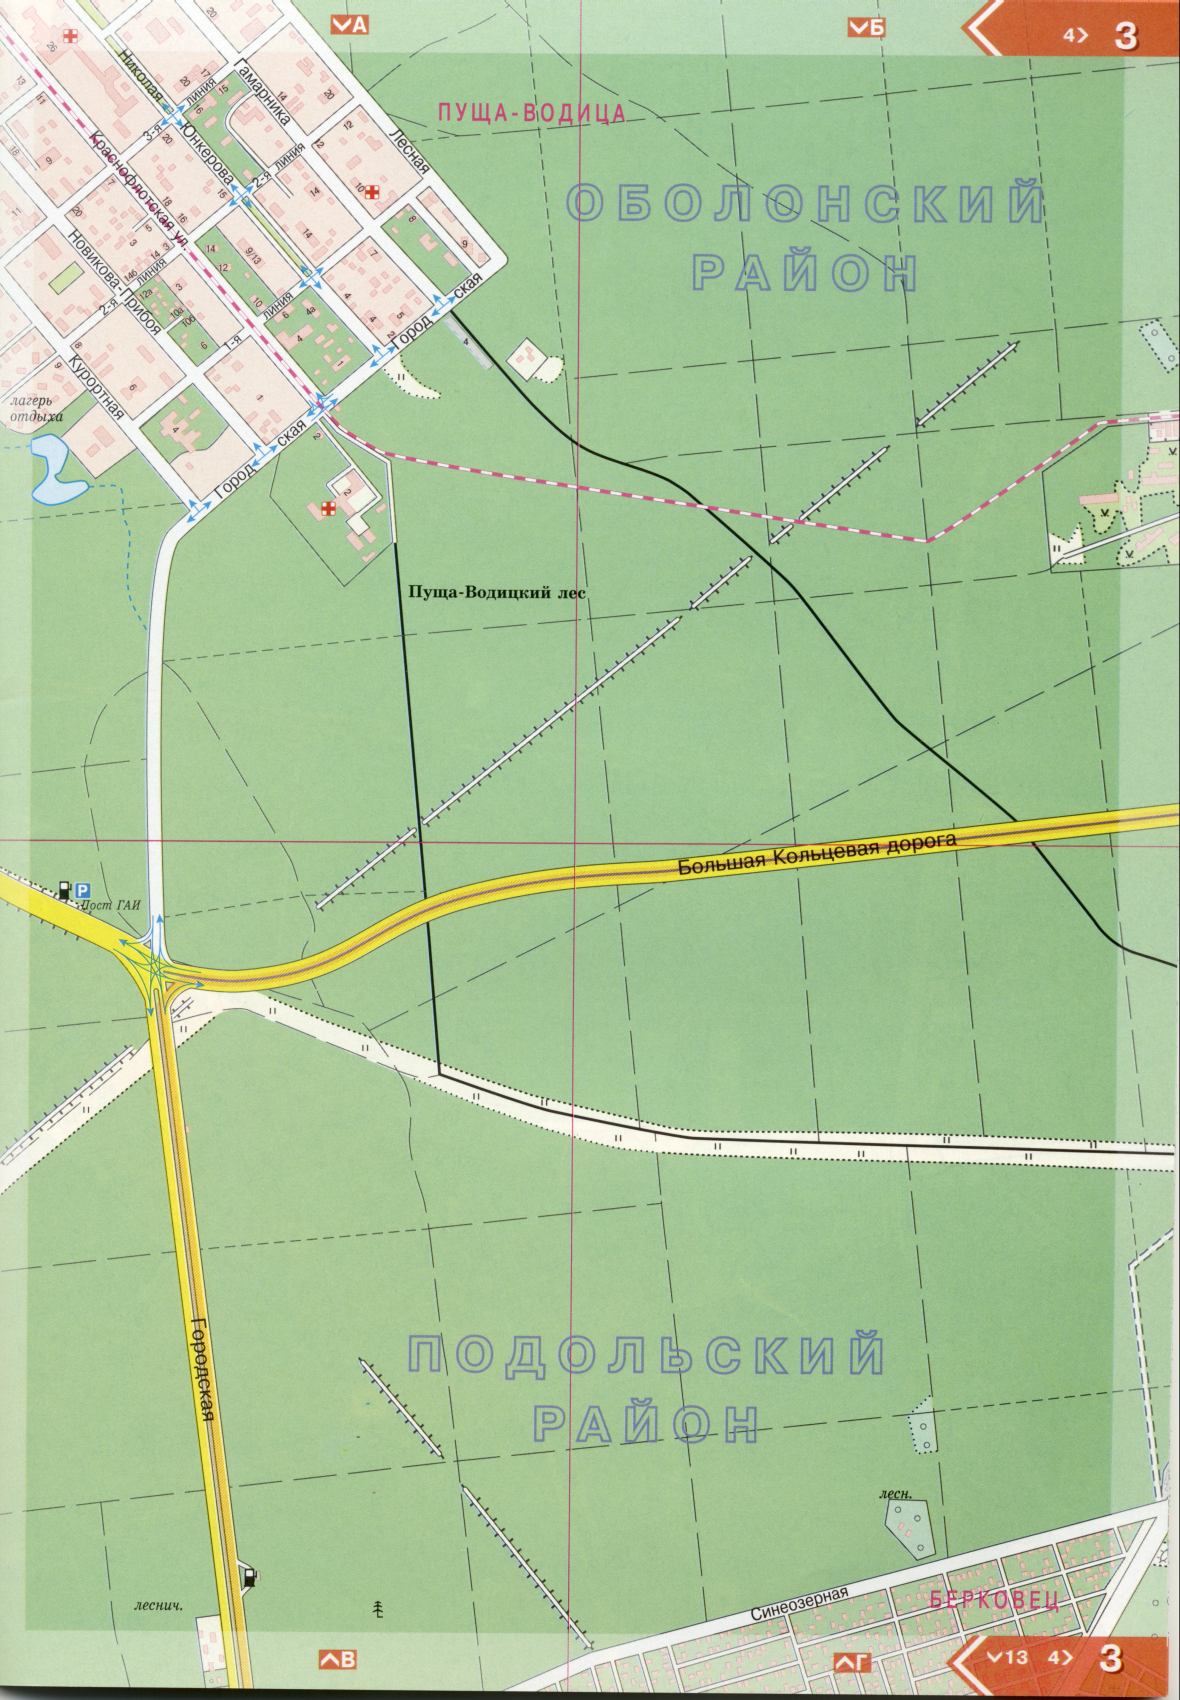 Kiev carte détails 1cm = 150m pour 45 feuilles. Carte de Kiev de l'atlas des routes. Télécharger une carte détaillée du quartier Obolonskyi de Kiev